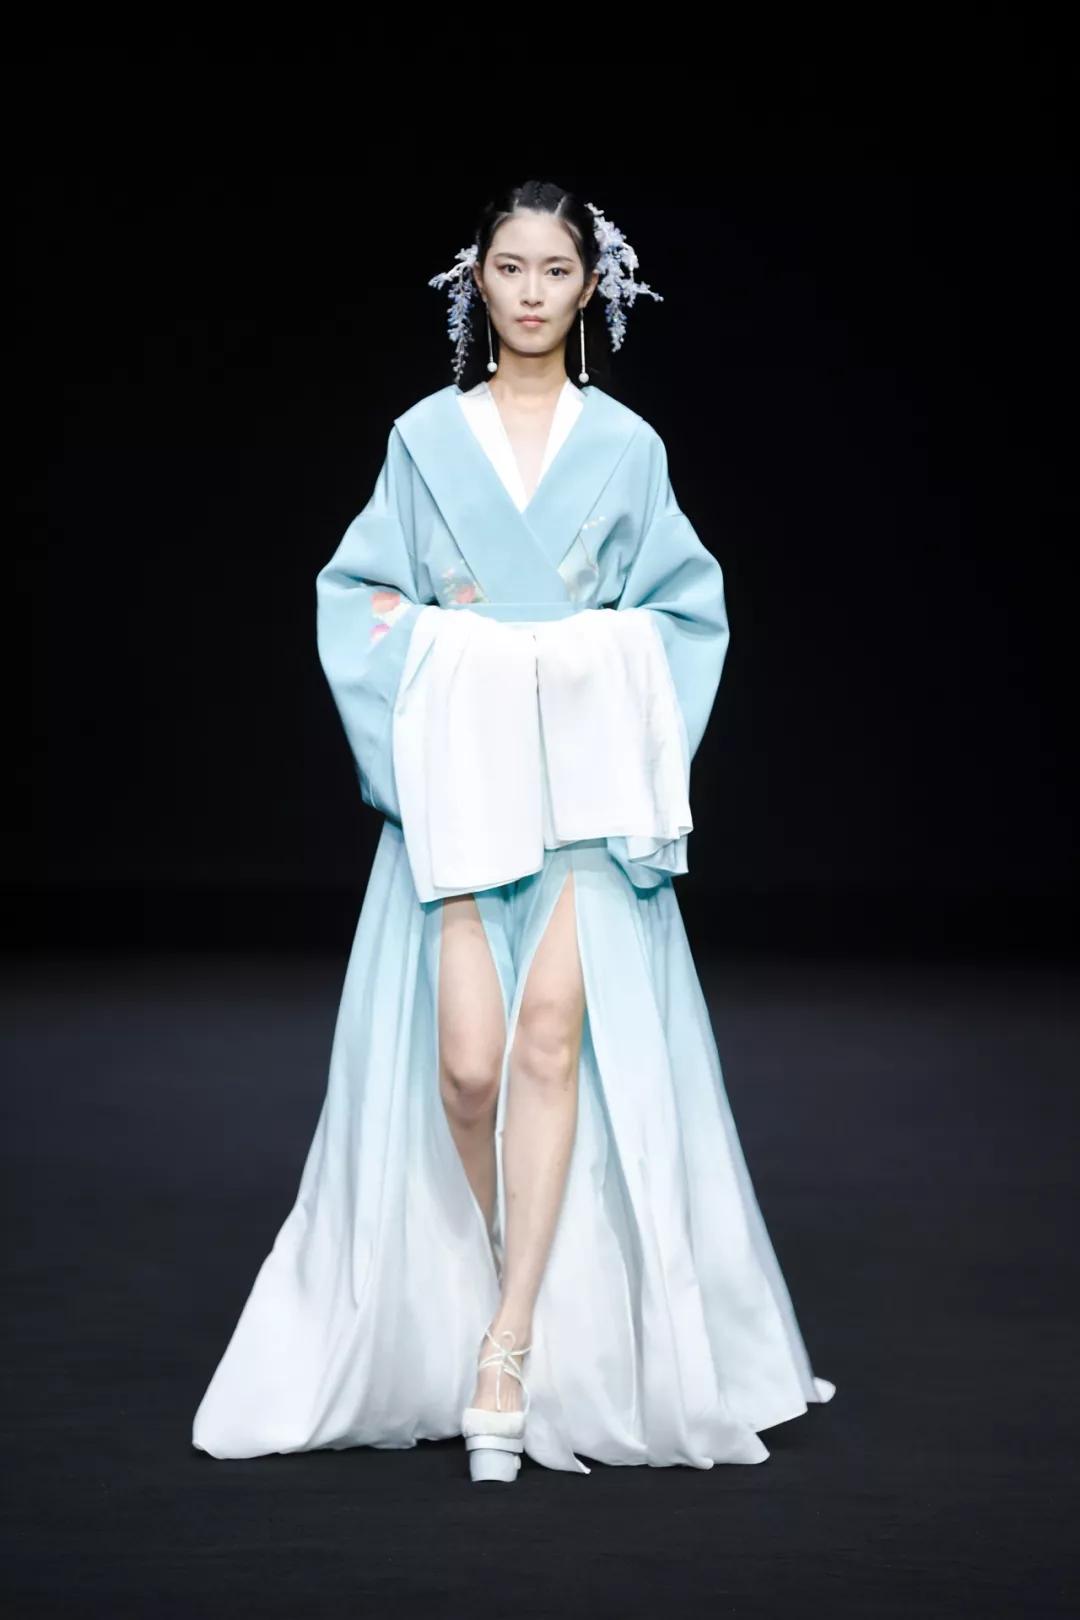 刘诗诗蓝色丝绸长裙优雅灵动 秀精致侧颜气质温柔 -- 眼界，放眼世界